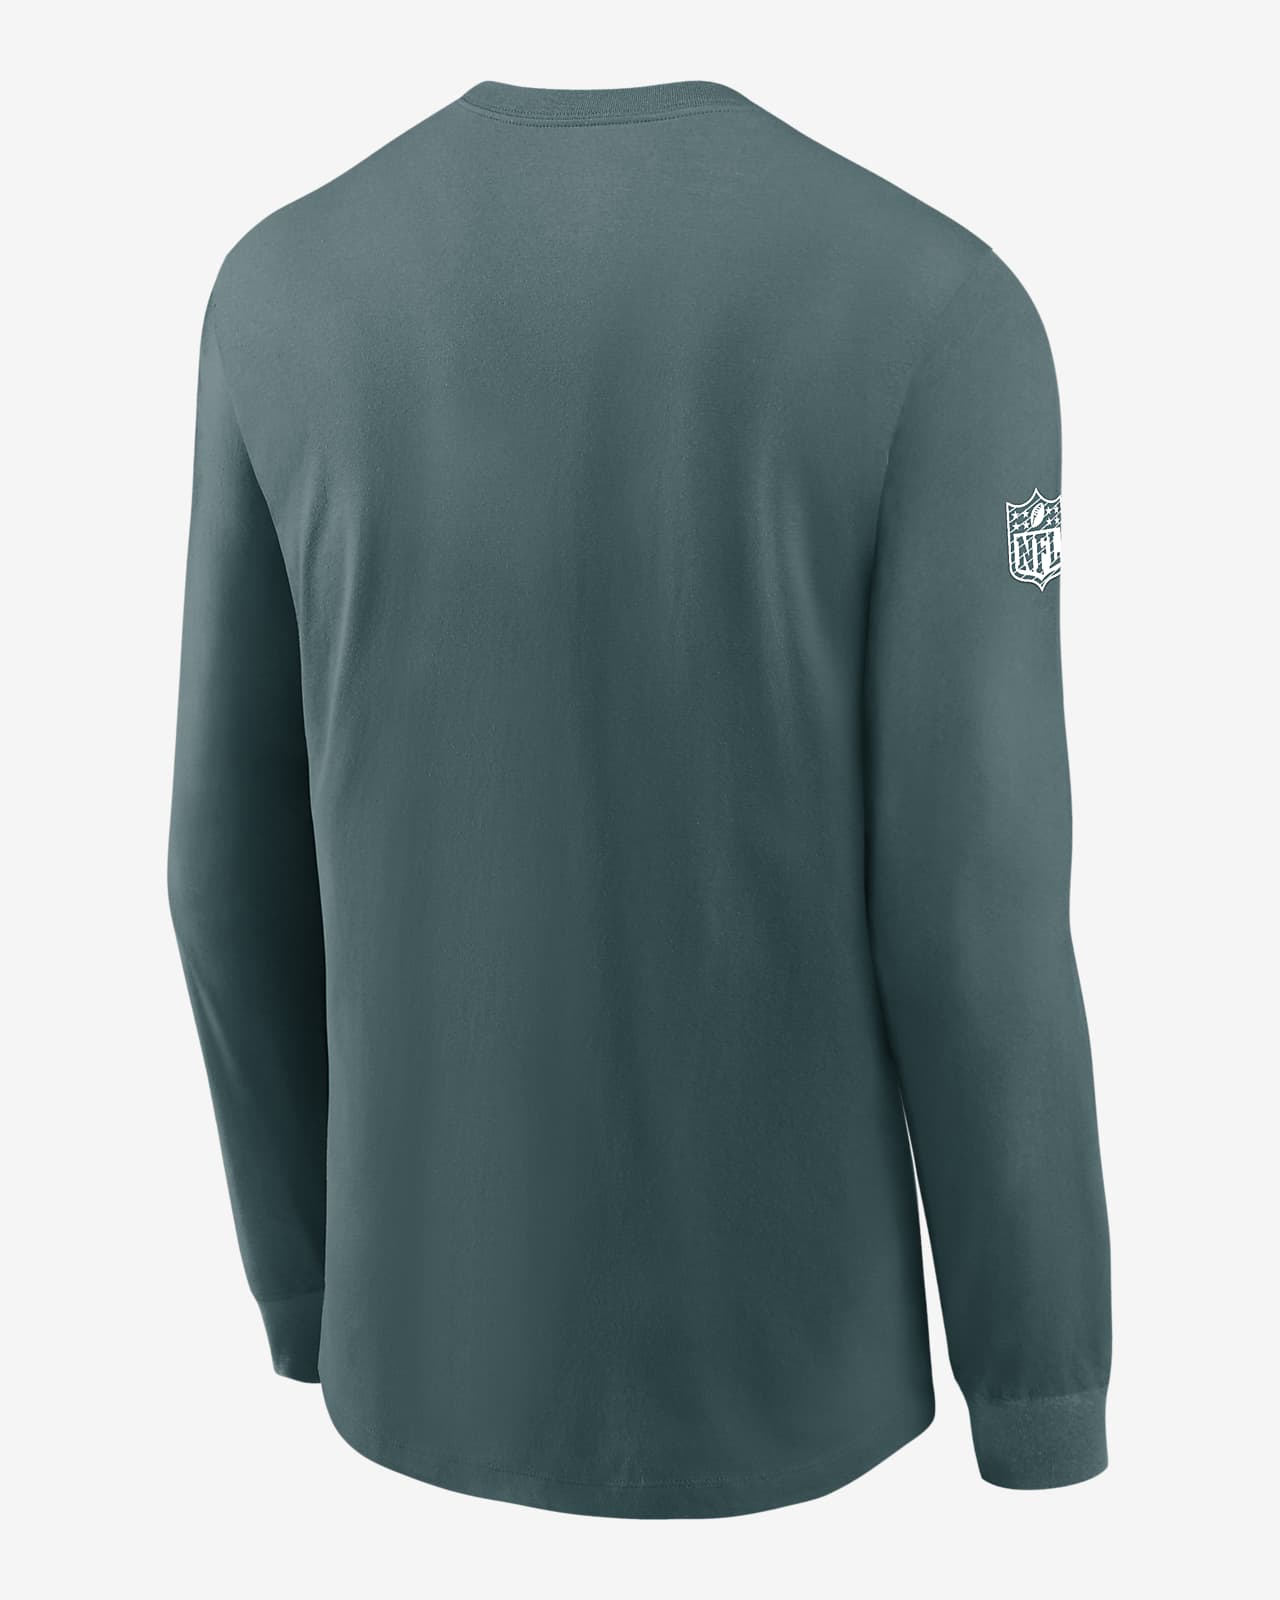 Philadelphia Eagles Sideline Team Issue Men's Nike Dri-FIT NFL Long-Sleeve  T-Shirt